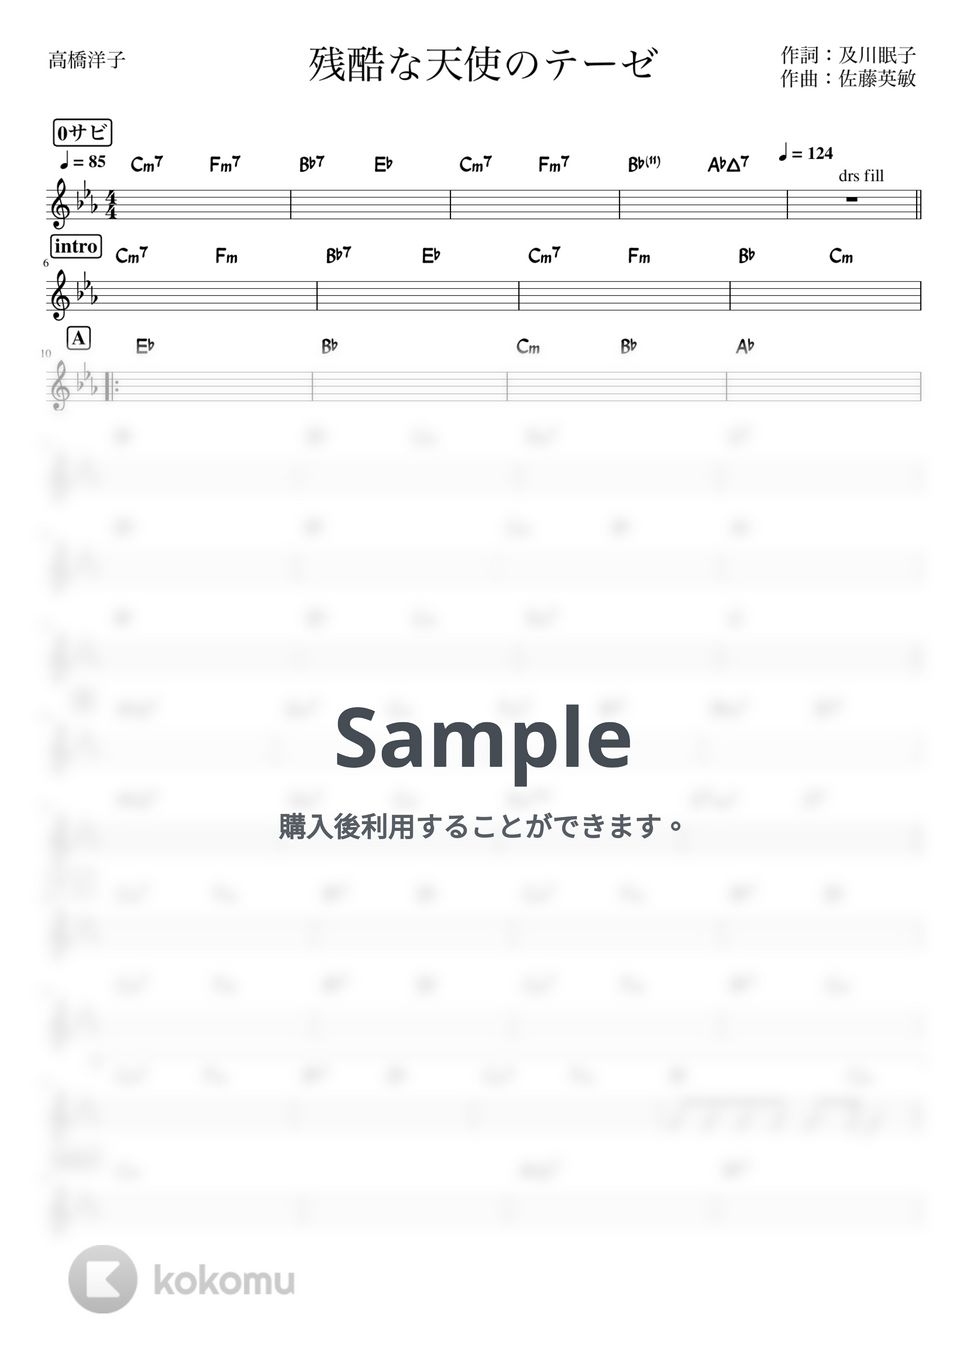 高橋洋子 - 残酷な天使のテーゼ (バンド用コード譜) by 箱譜屋